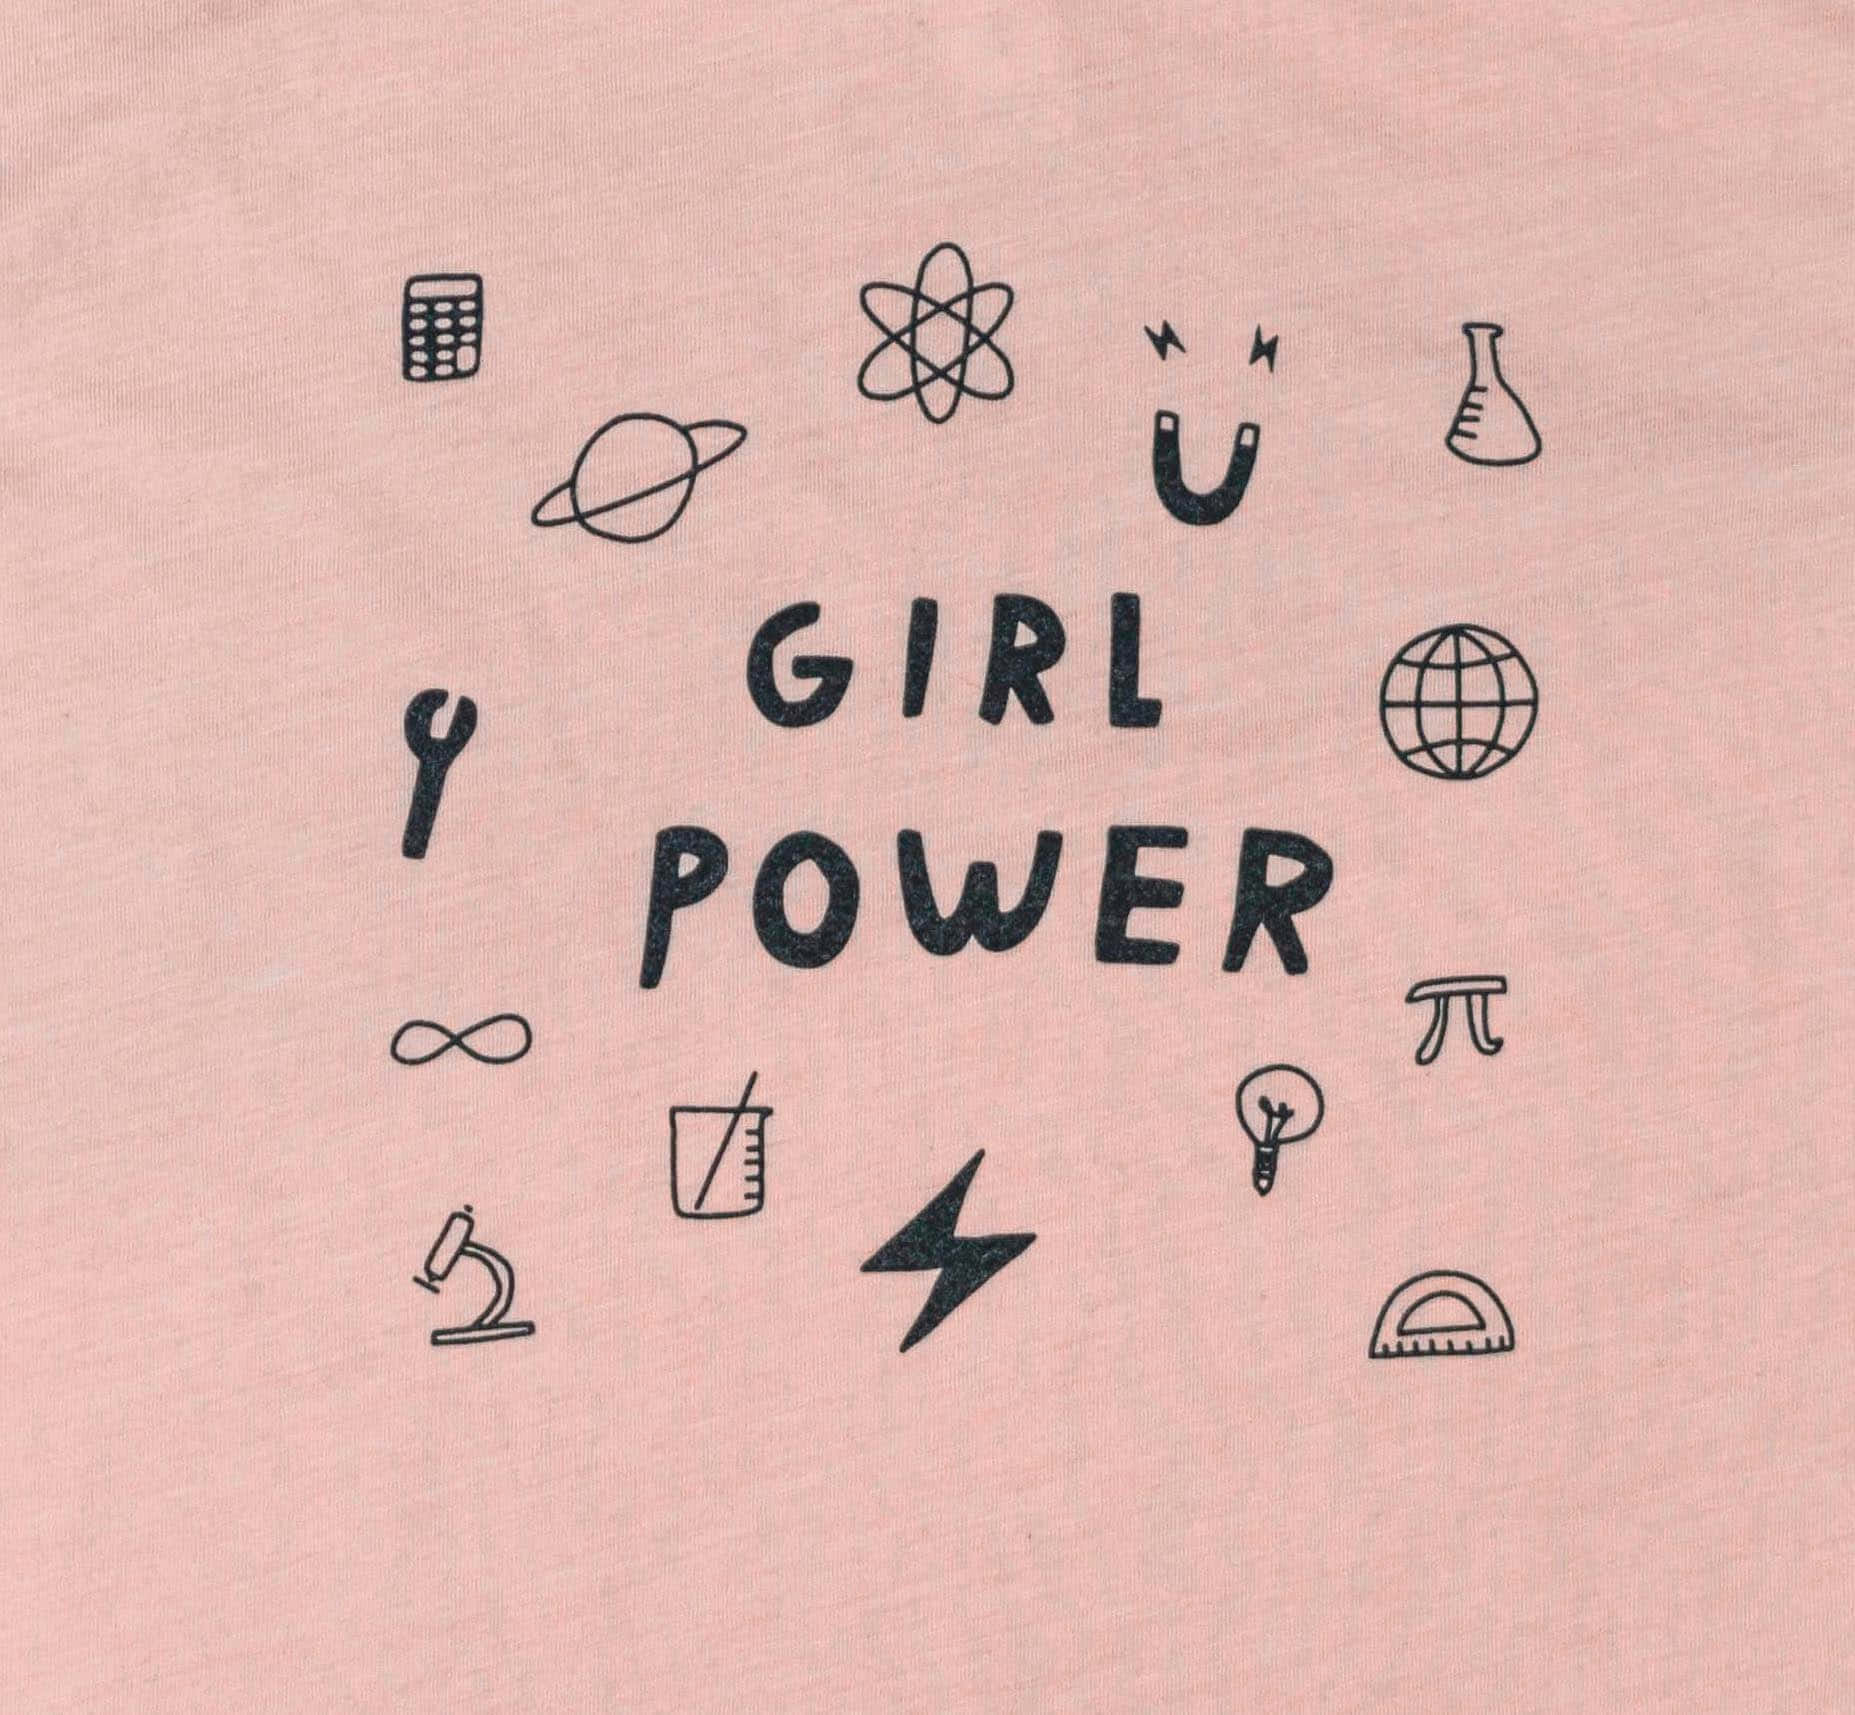 Girl Power Feminist Symbols T Shirt Design Wallpaper